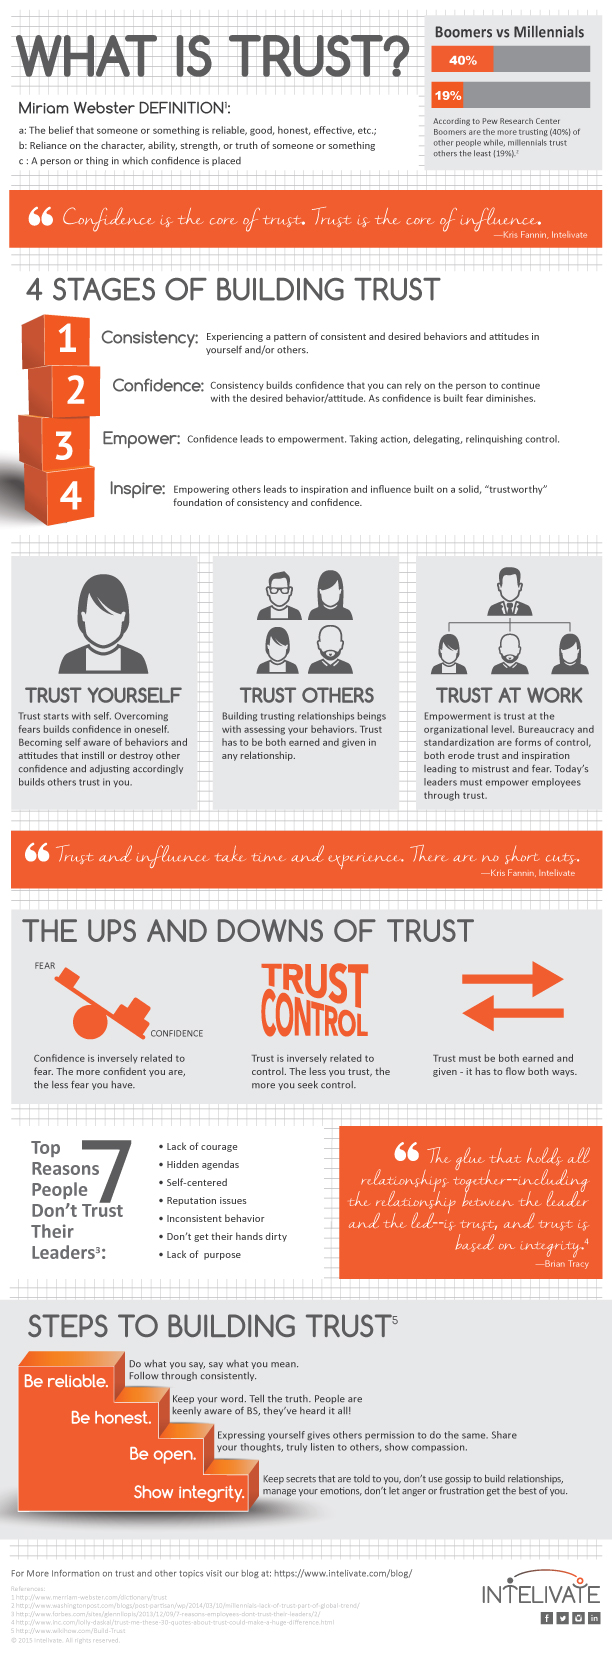 intelivate-trust-issues-rebuild-trust-leadership-team-development